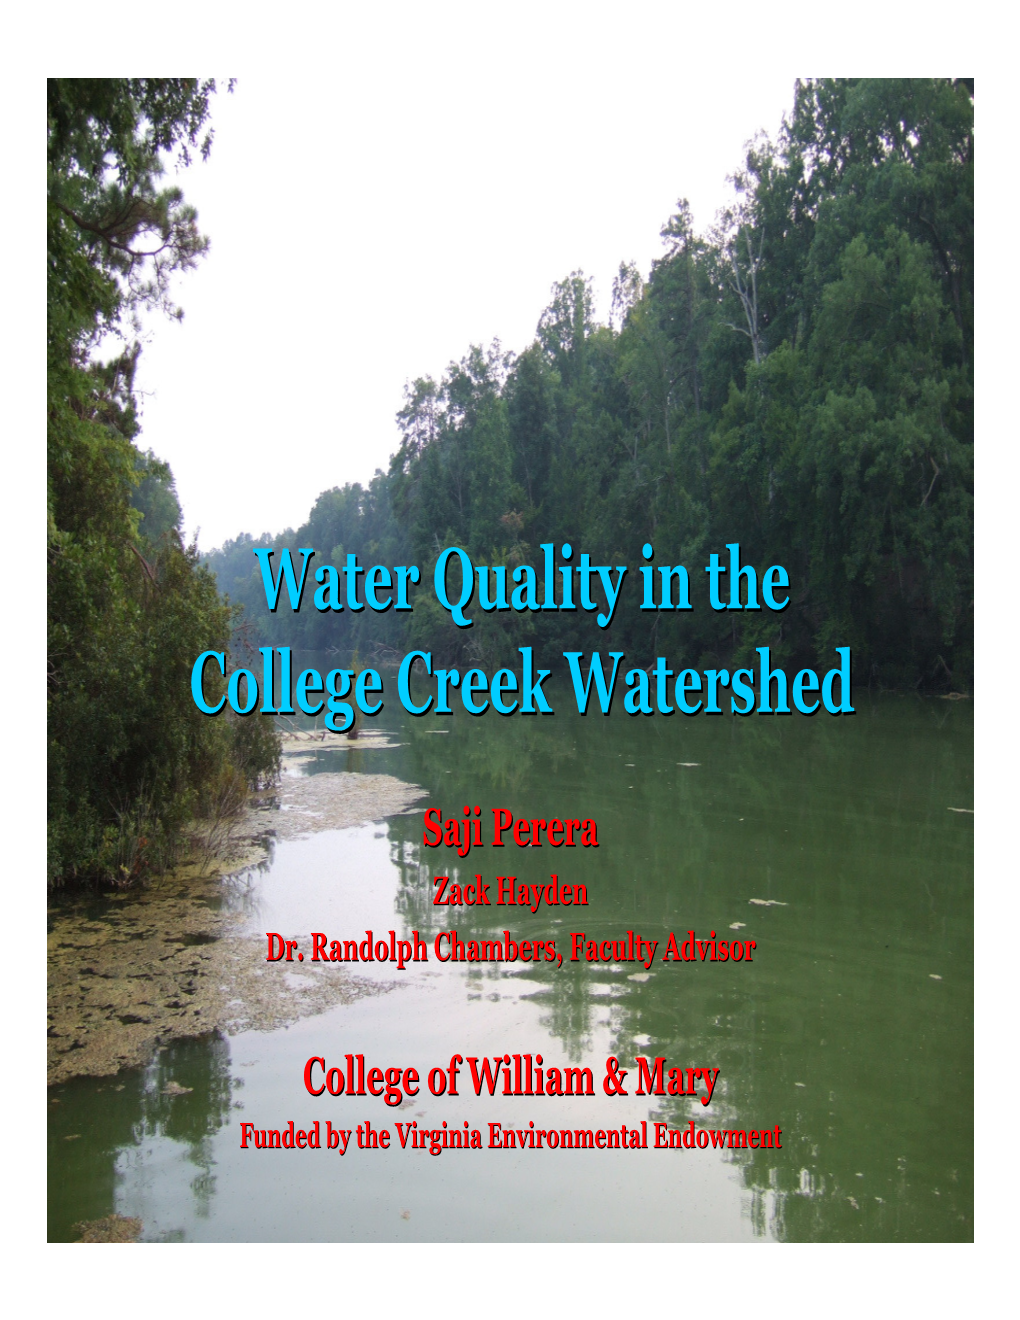 College Creek Watershed